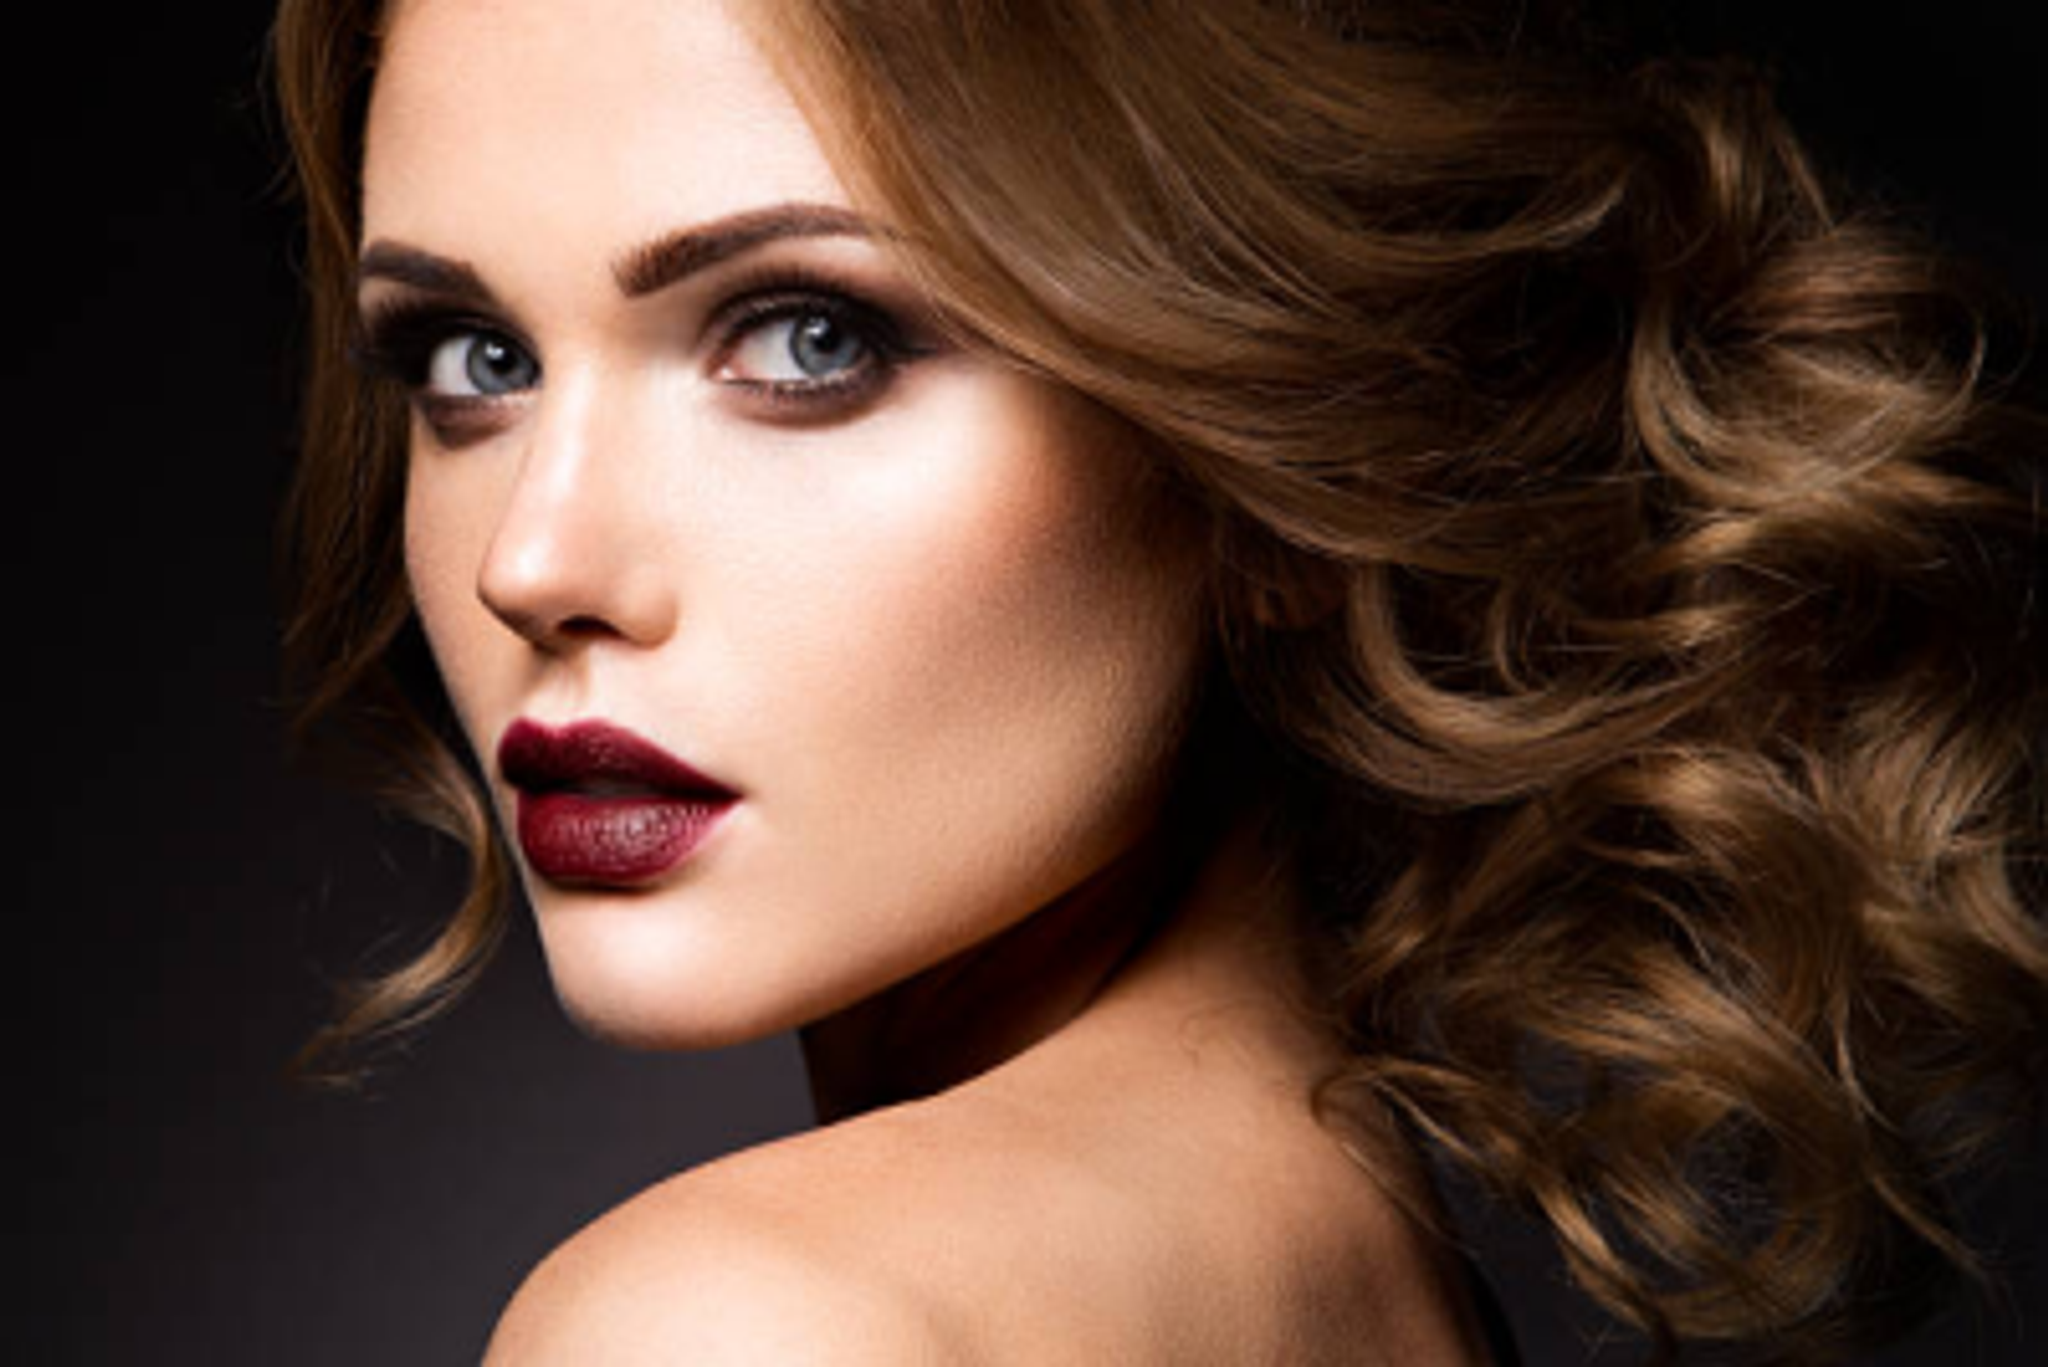 beauty salon model images